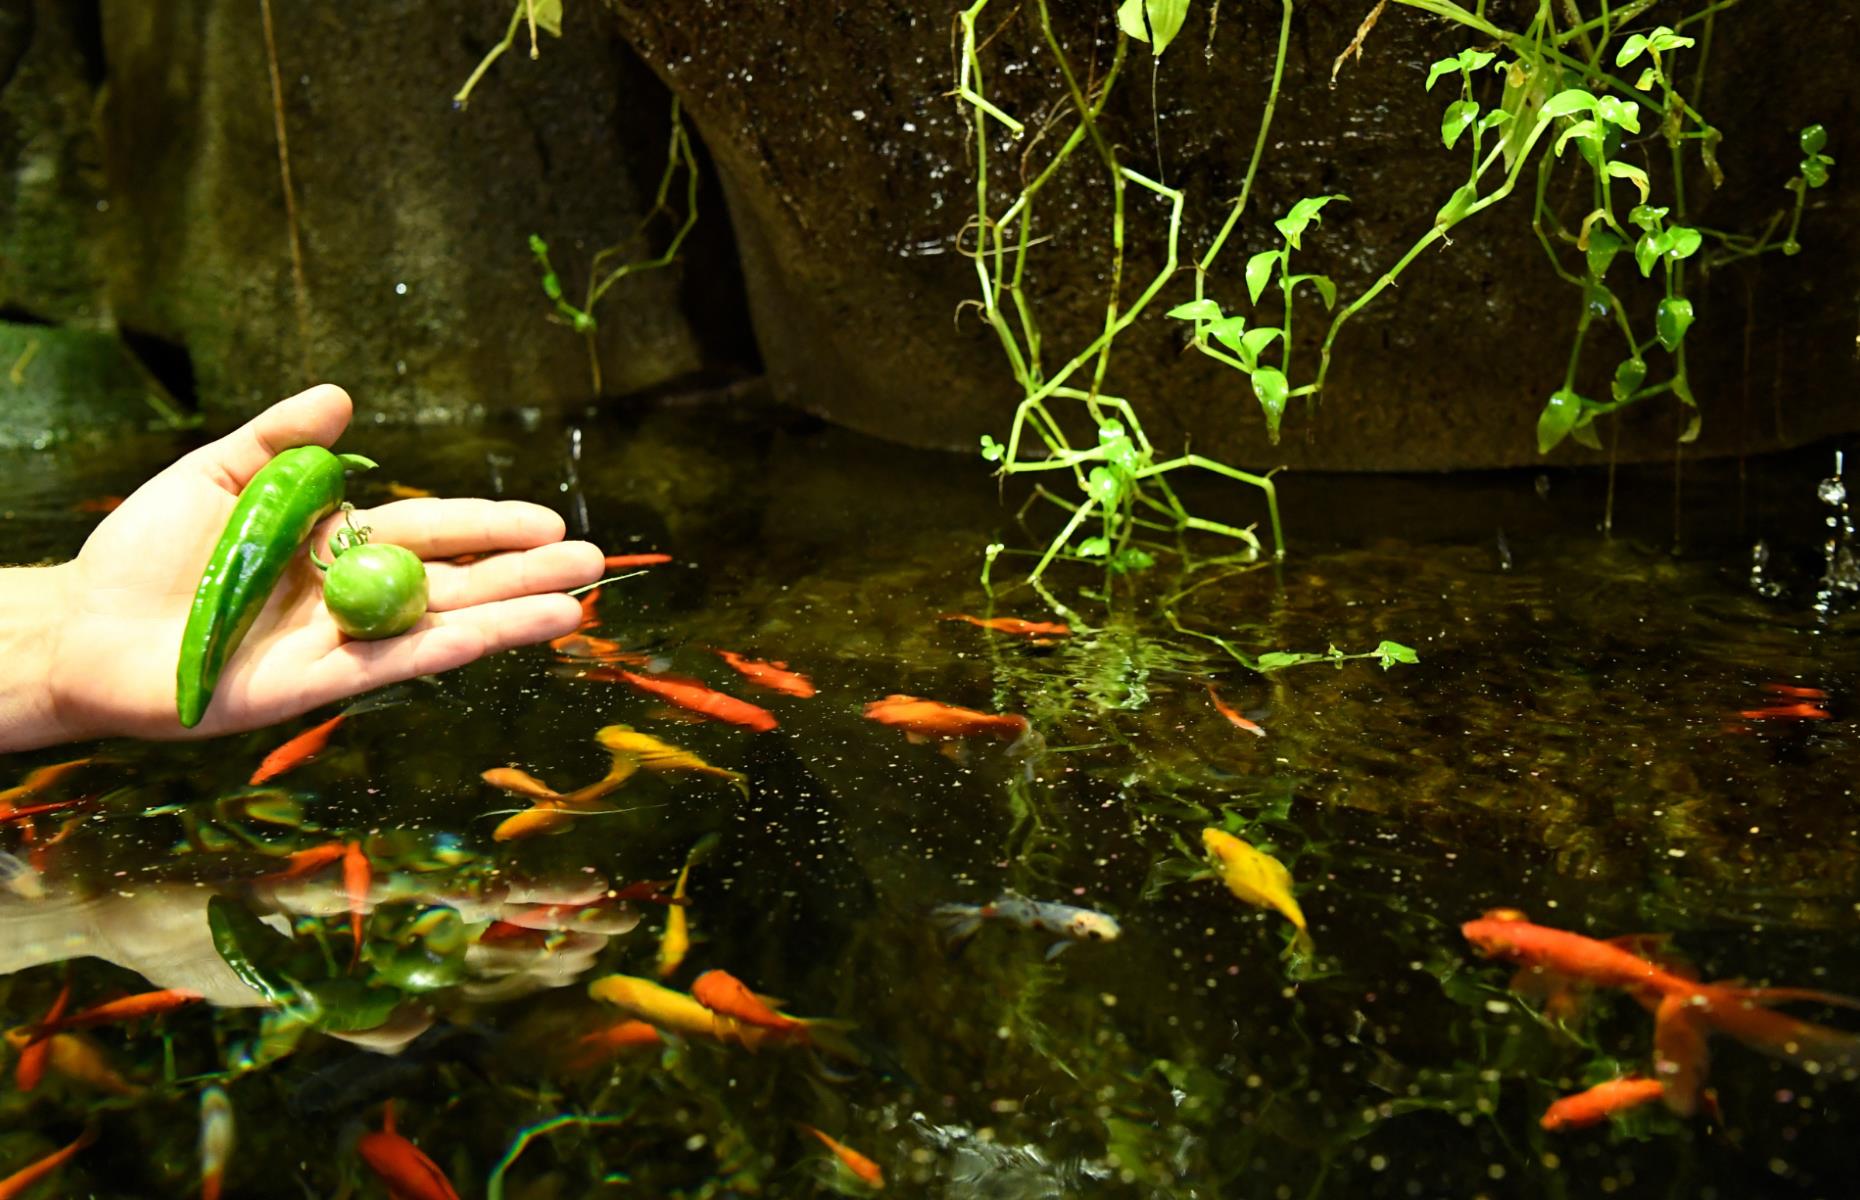 Aquarium of Paris Vegetable Garden, Paris, France